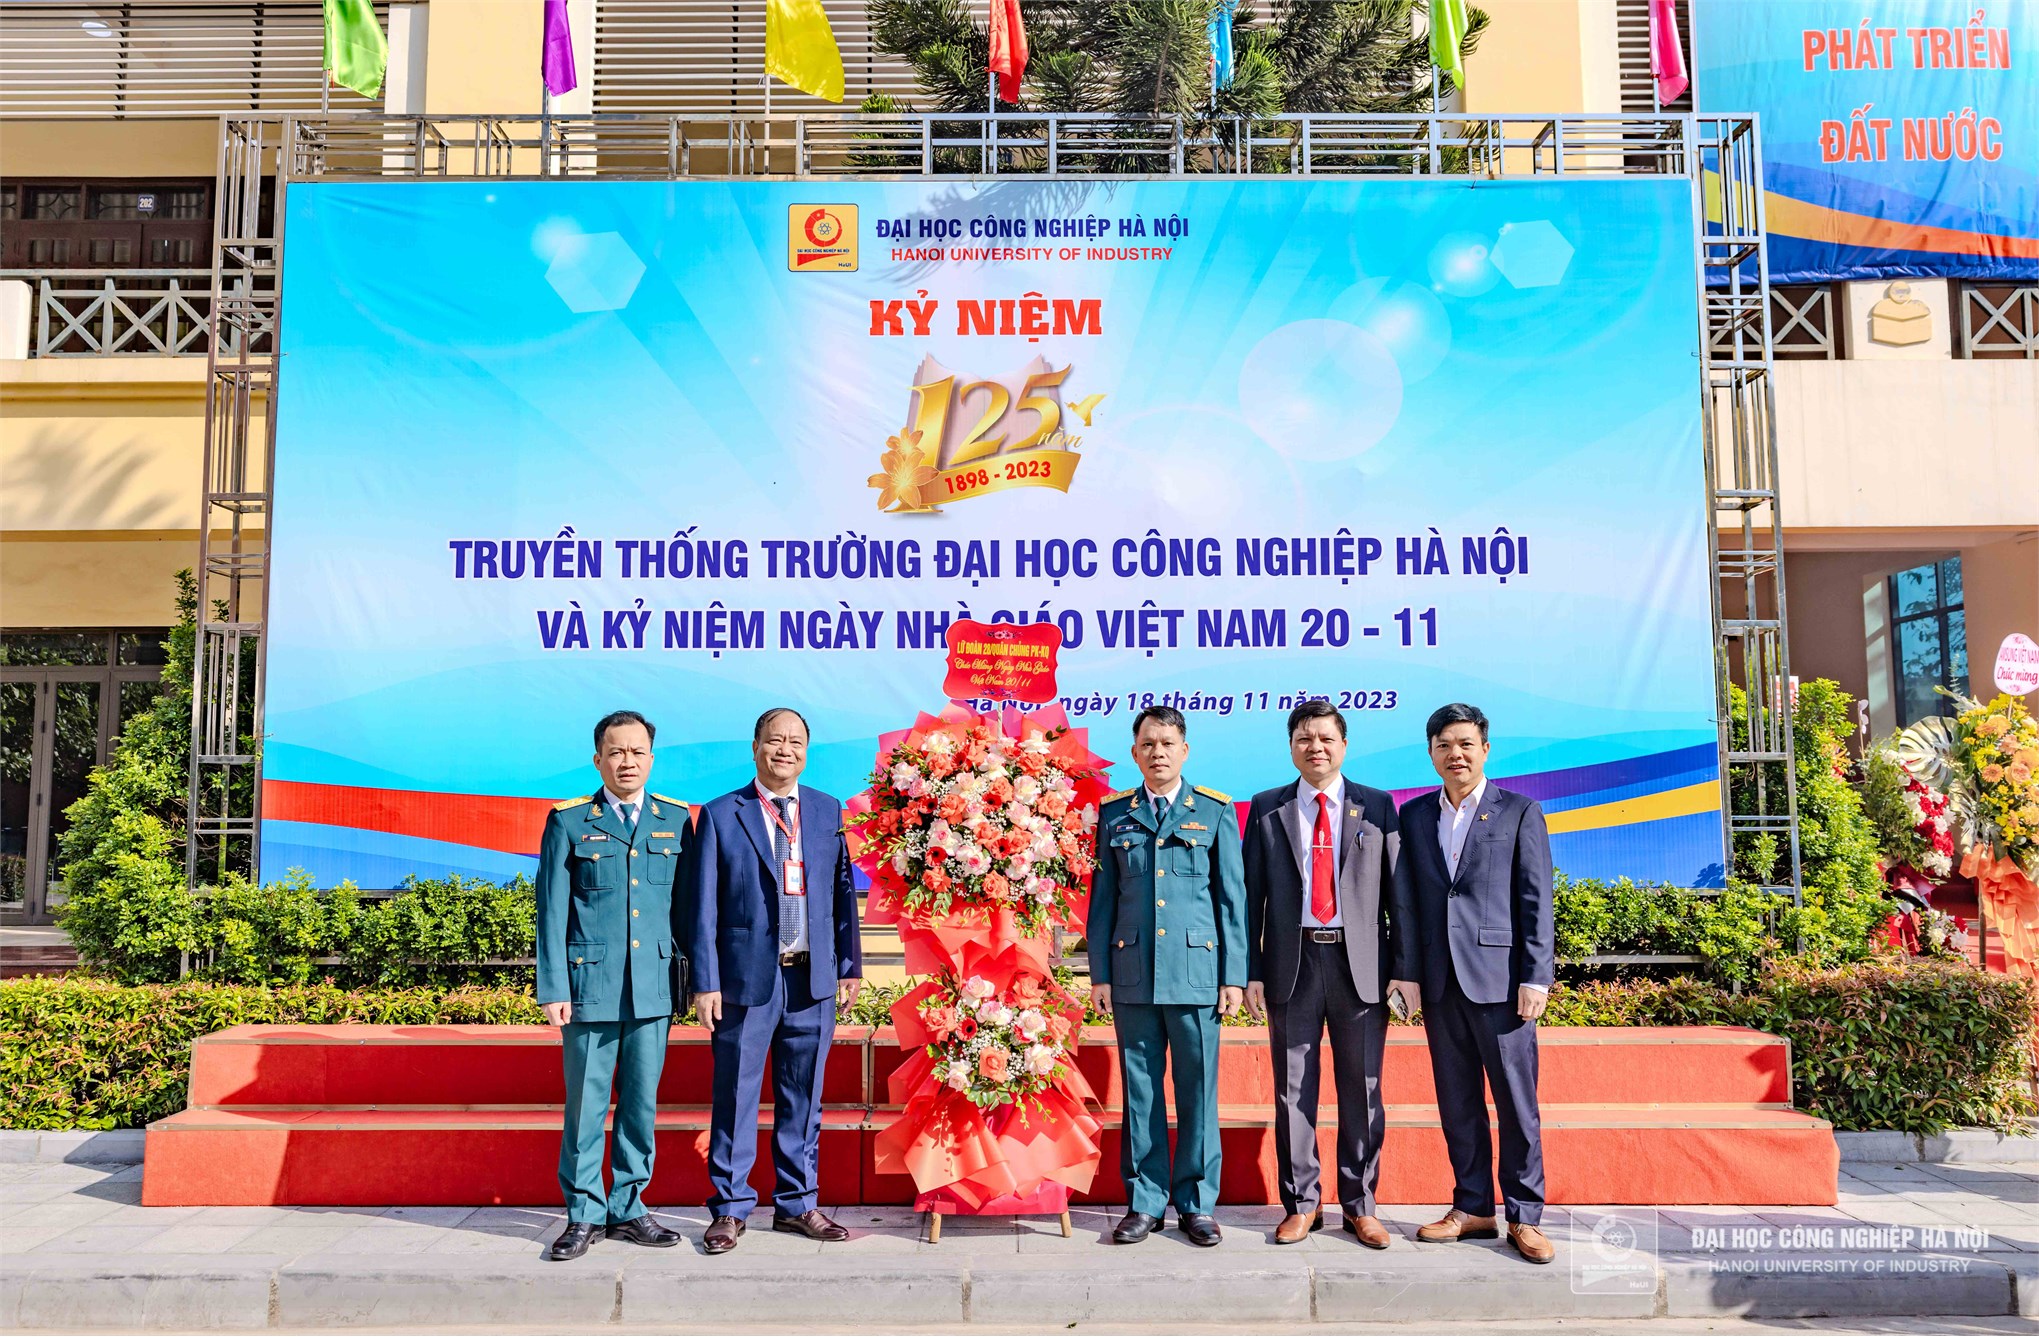 Lễ kỷ niệm 125 năm truyền thống Trường Đại học Công nghiệp Hà Nội (1898 – 2023) và kỷ niệm 41 năm Ngày Nhà giáo Việt Nam 20/11